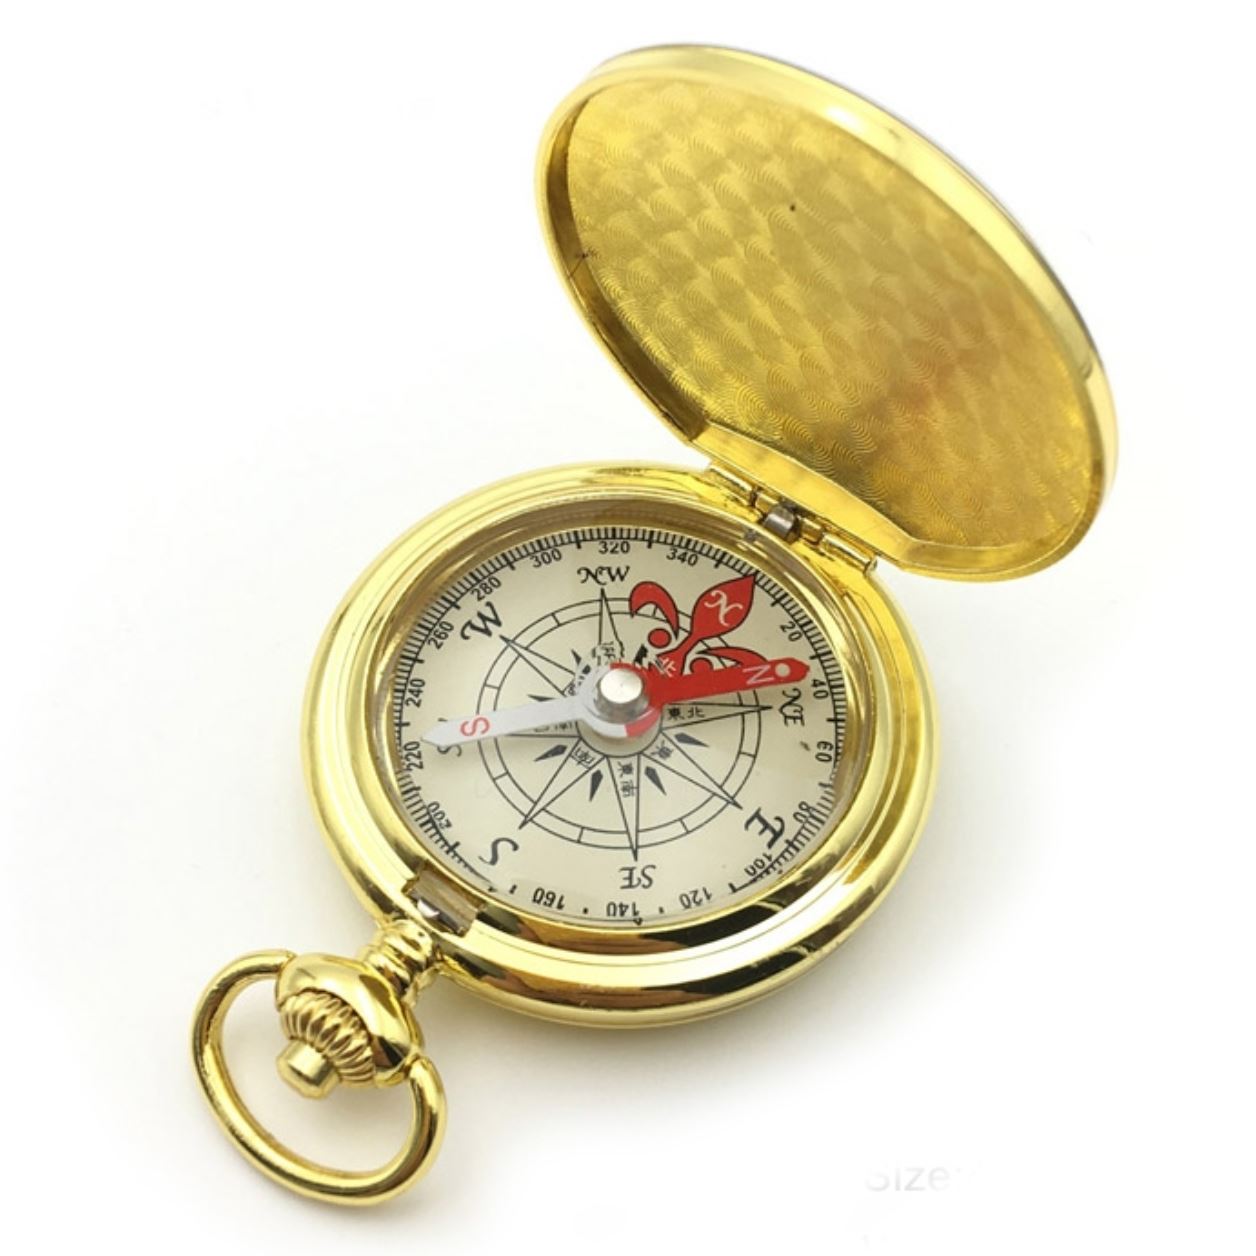 Šperky4U Zlacený kompas v uzavíratelném kovovém pouzdru BZ0004-GD